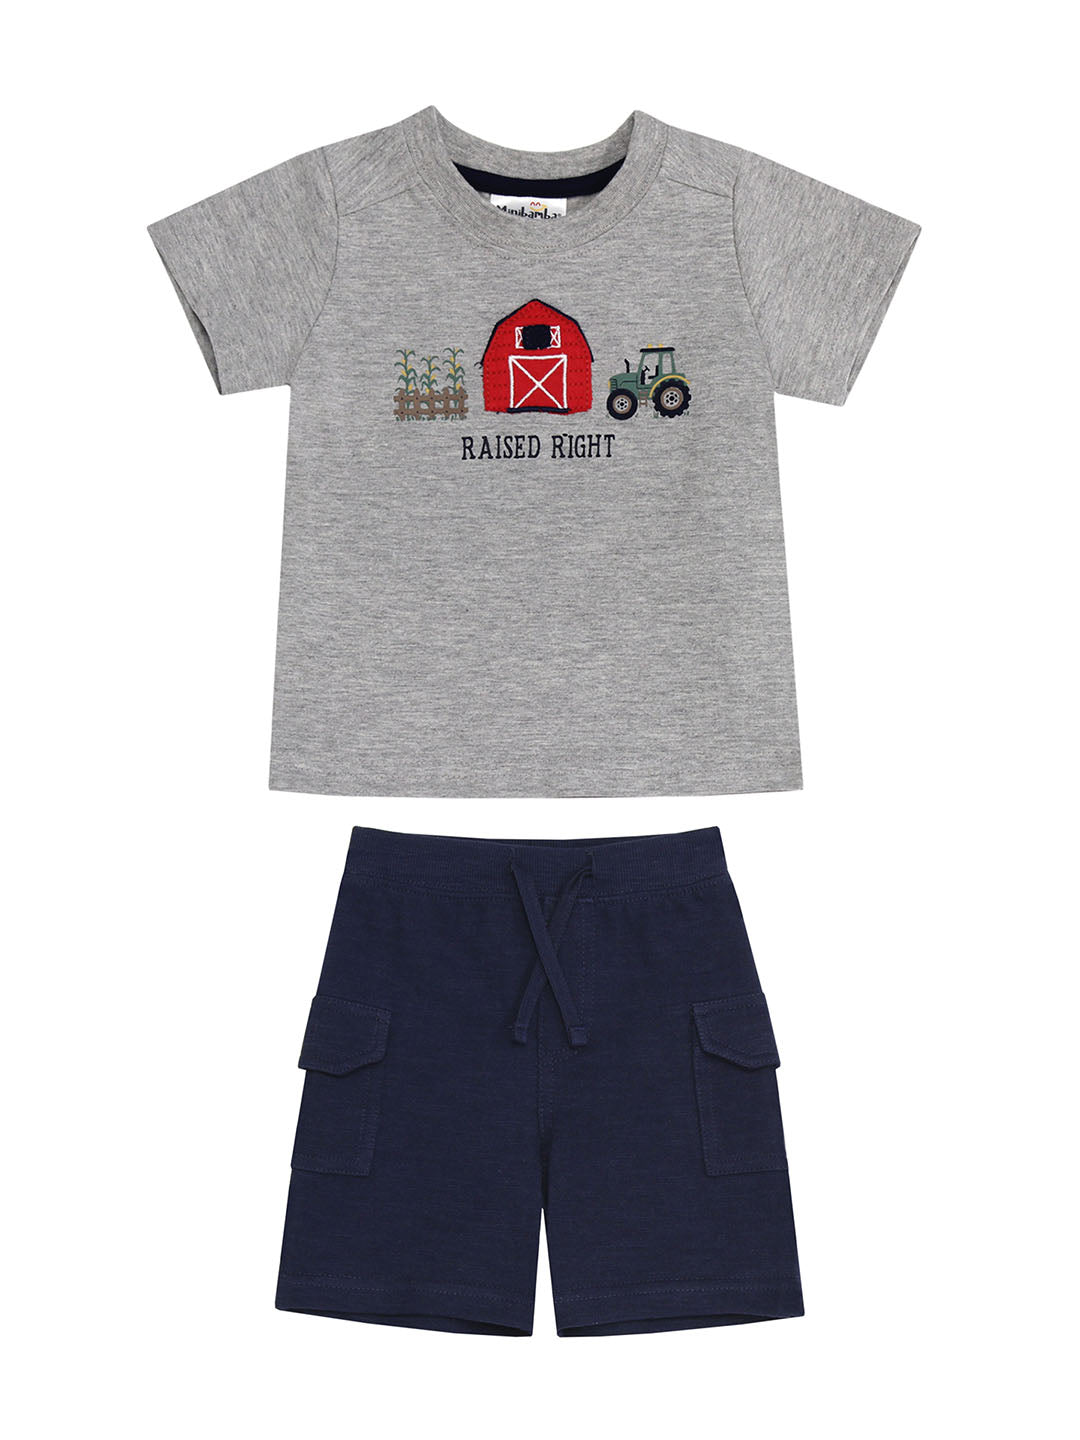 Grey "Raised Right" Farm Tee & Navy Shorts